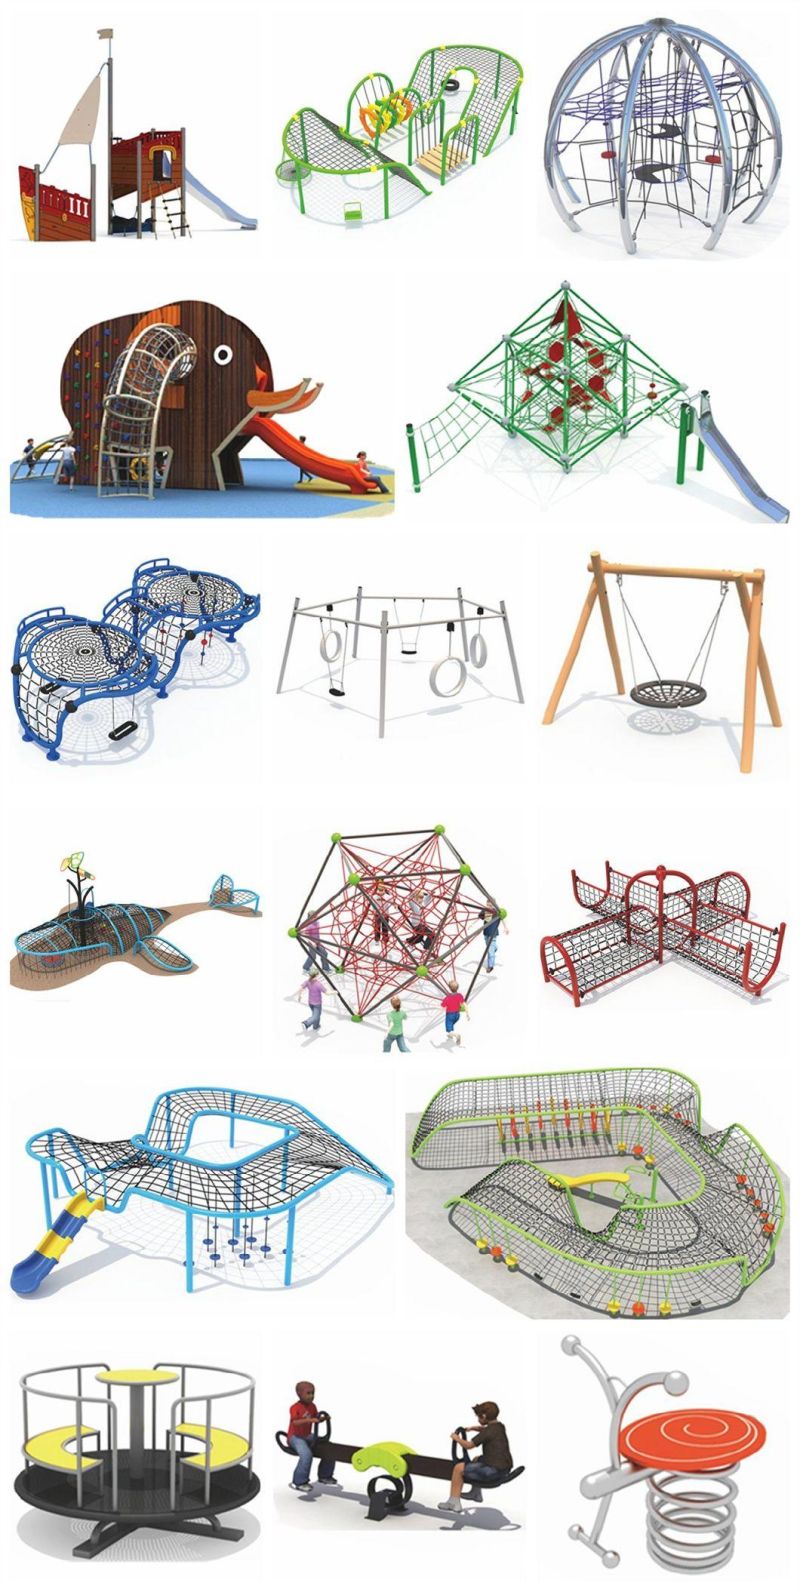 Park Outdoor Stainless Steel Slide Children Playground Sports Equipment